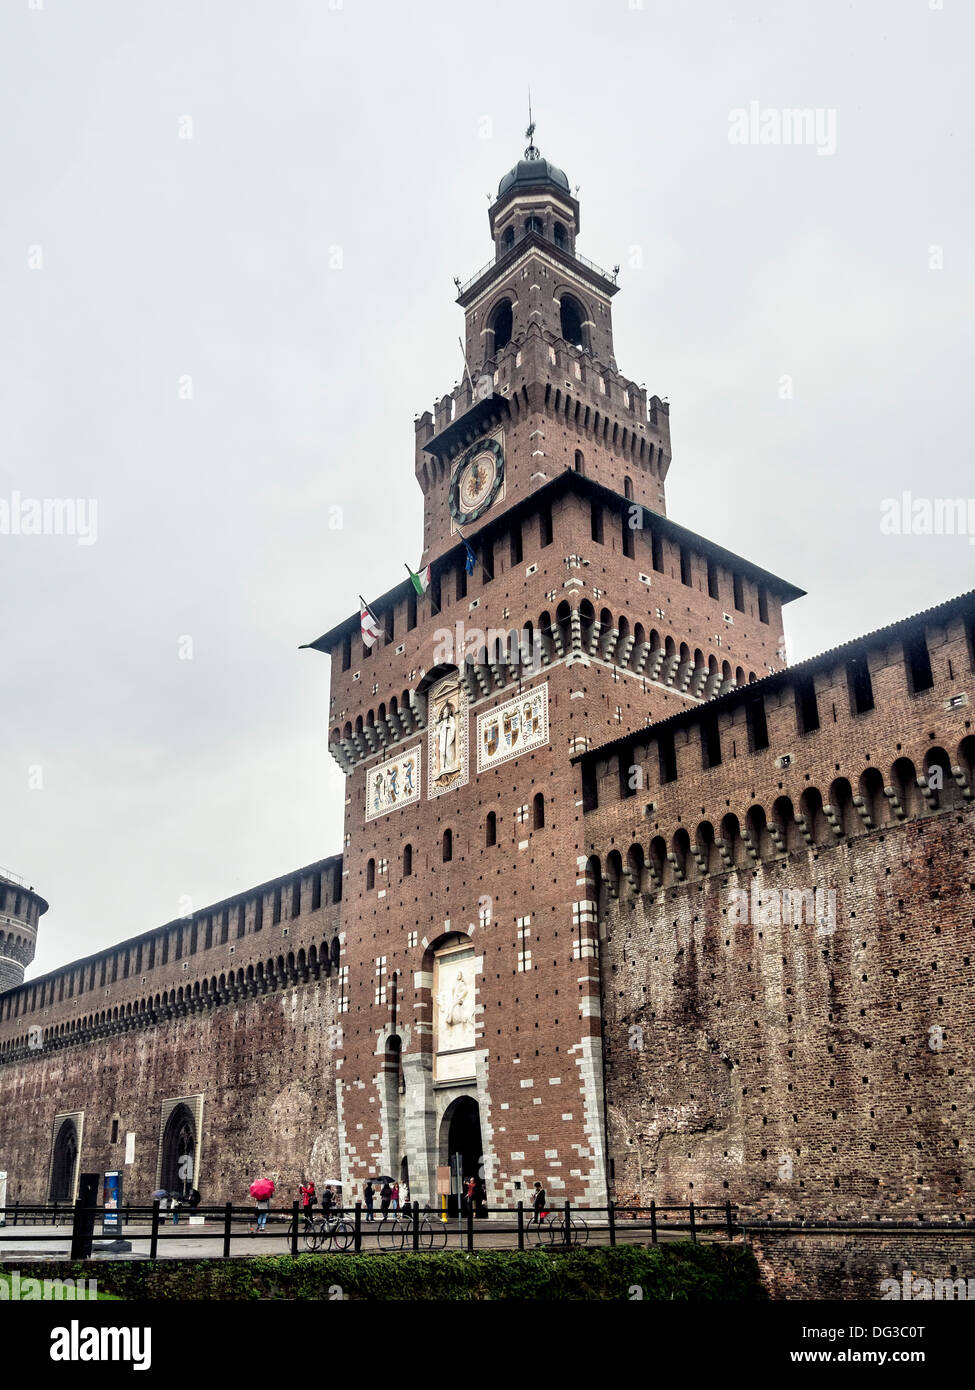 Entrance of Castello Sforzesco (Sforza Castle) in Milan, Italy Stock Photo